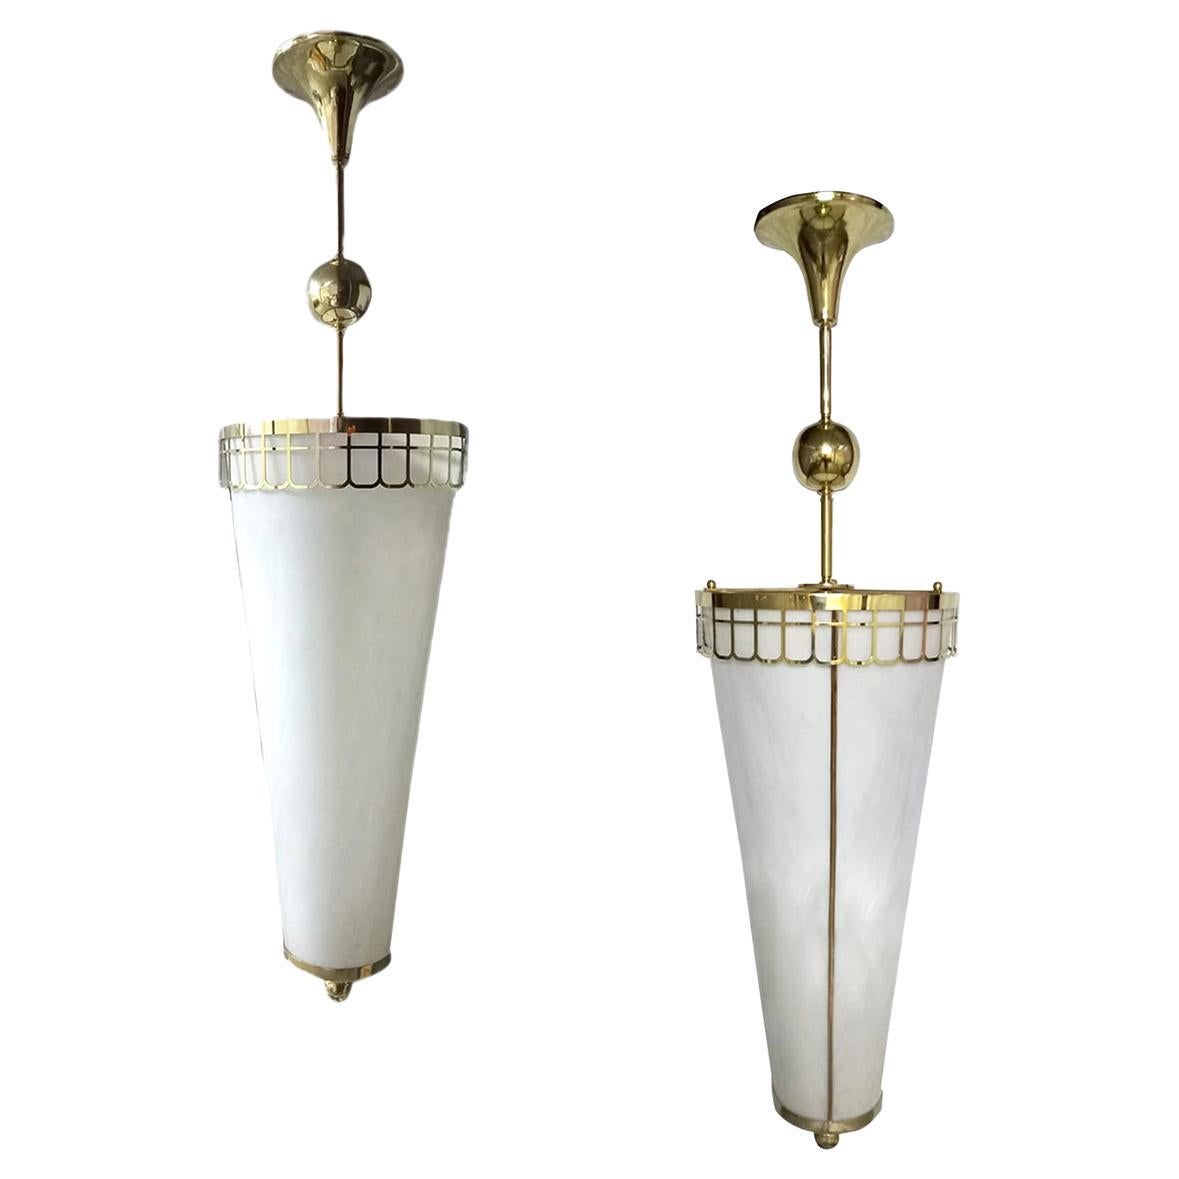 Ein Satz von sechs französischen Pendelleuchten aus Milchglas aus den 1950er Jahren mit Bronzegehäuse und -beschlägen. Einzelverkauf.

Abmessungen:
Höhe des Körpers: 32